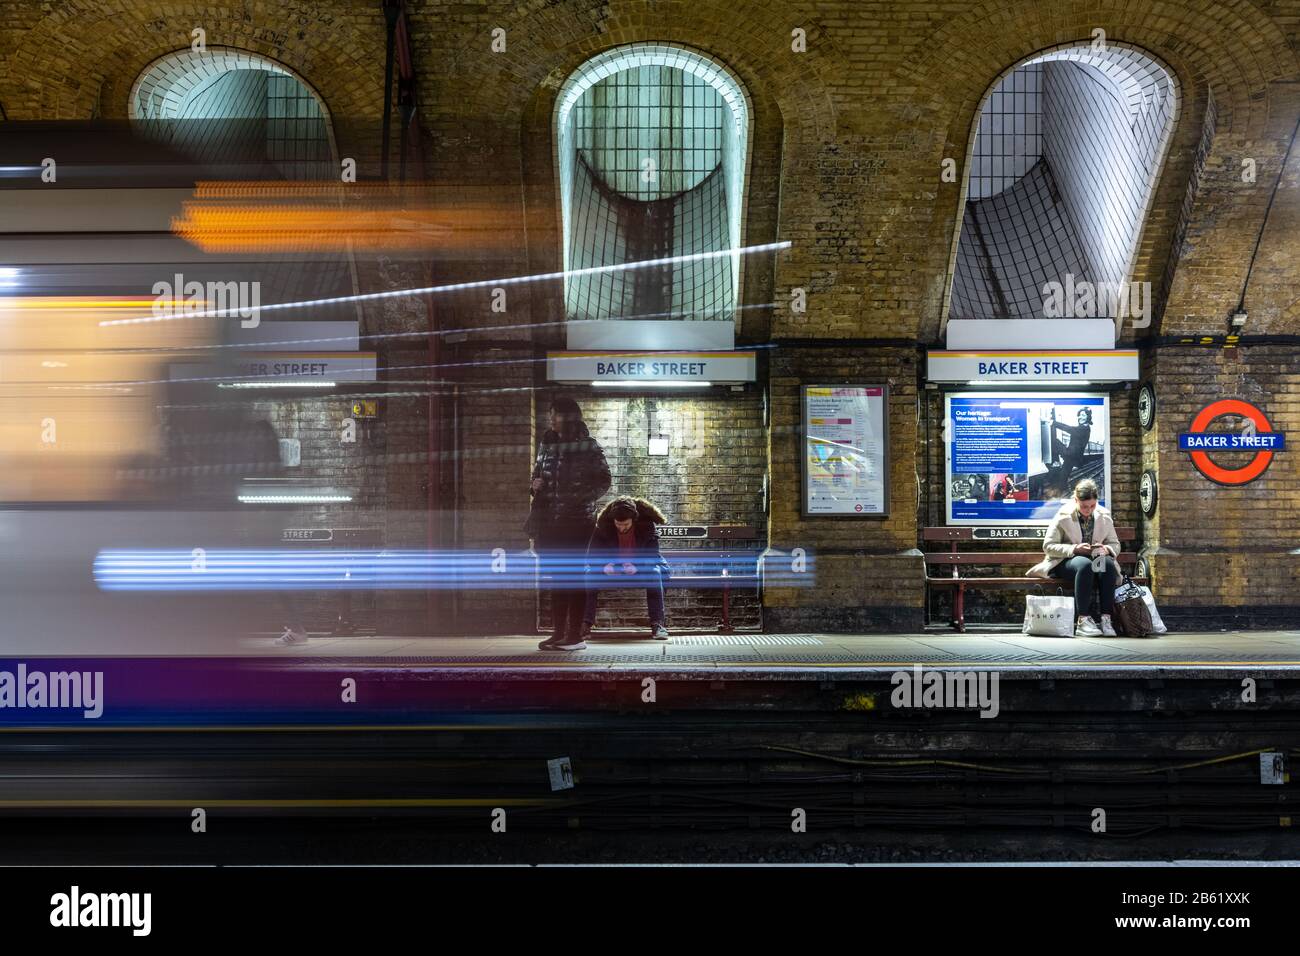 Londra, Inghilterra, Regno Unito - 3 marzo 2020: I pendolari attendono sulle piattaforme della stazione staica Baker Street della metropolitana di Londra come Hammersmith & City Line Foto Stock